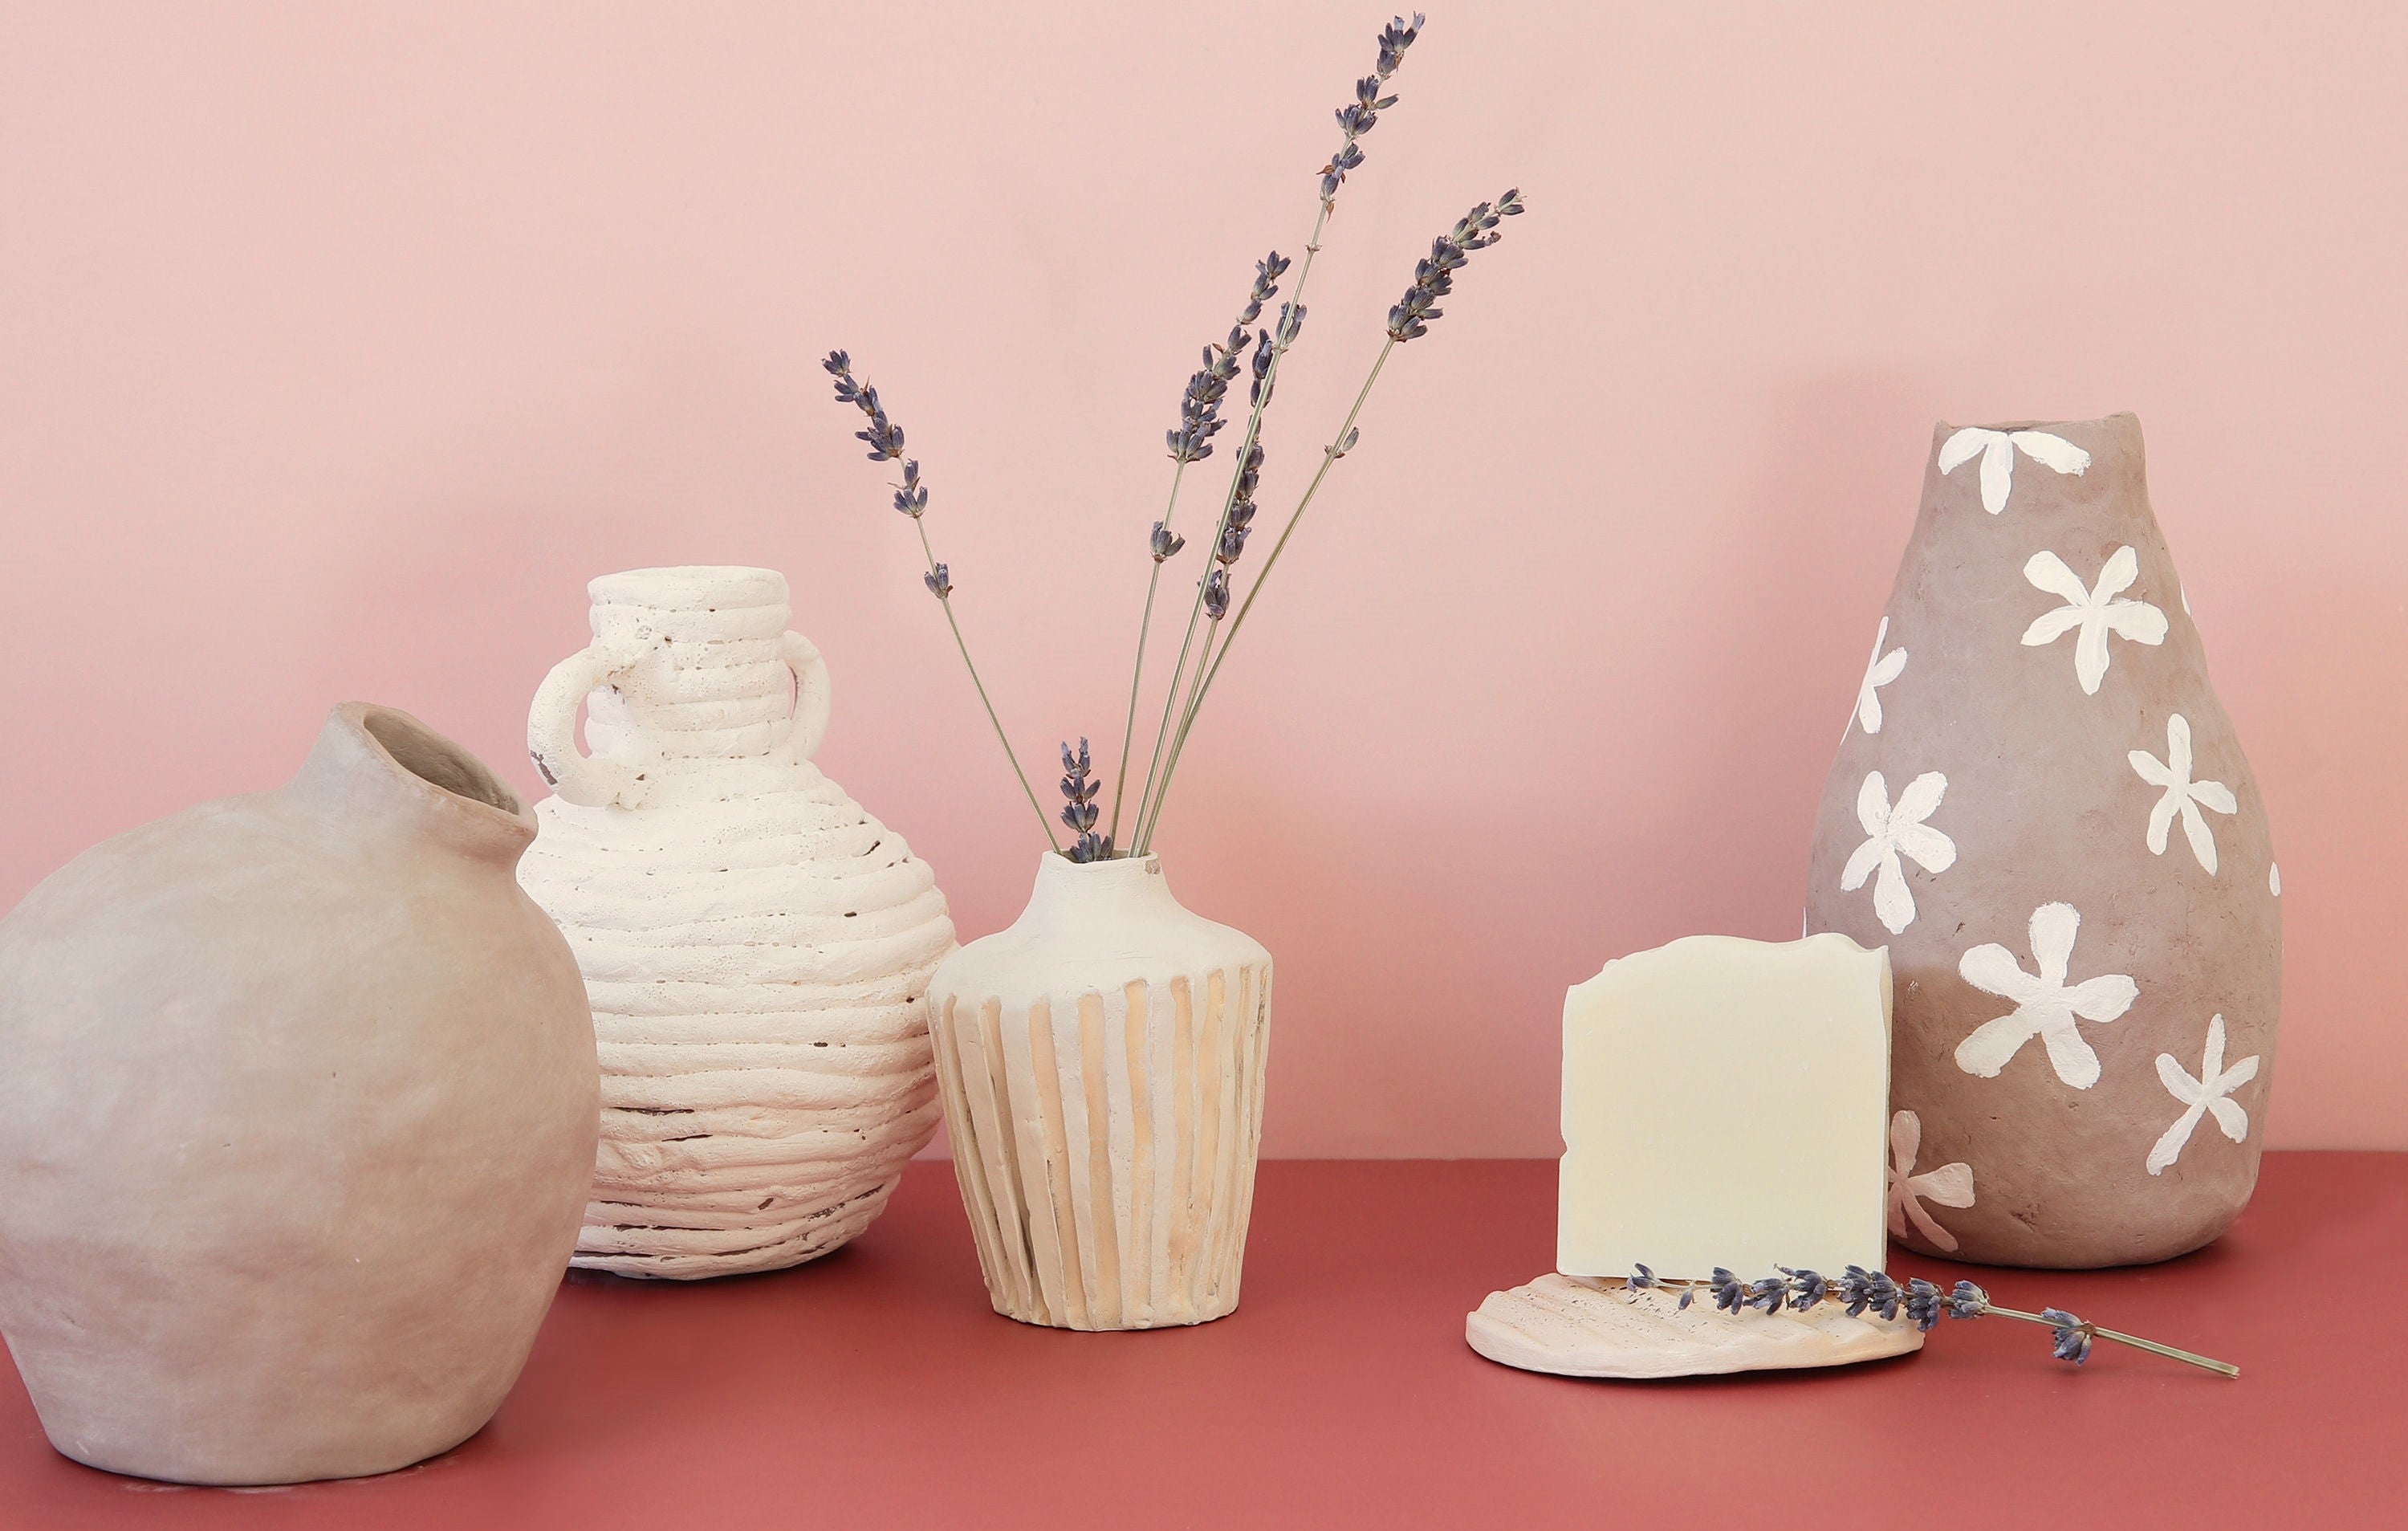 Apprends à fabriquer des vases en argile sans cuisson | Club terracotta